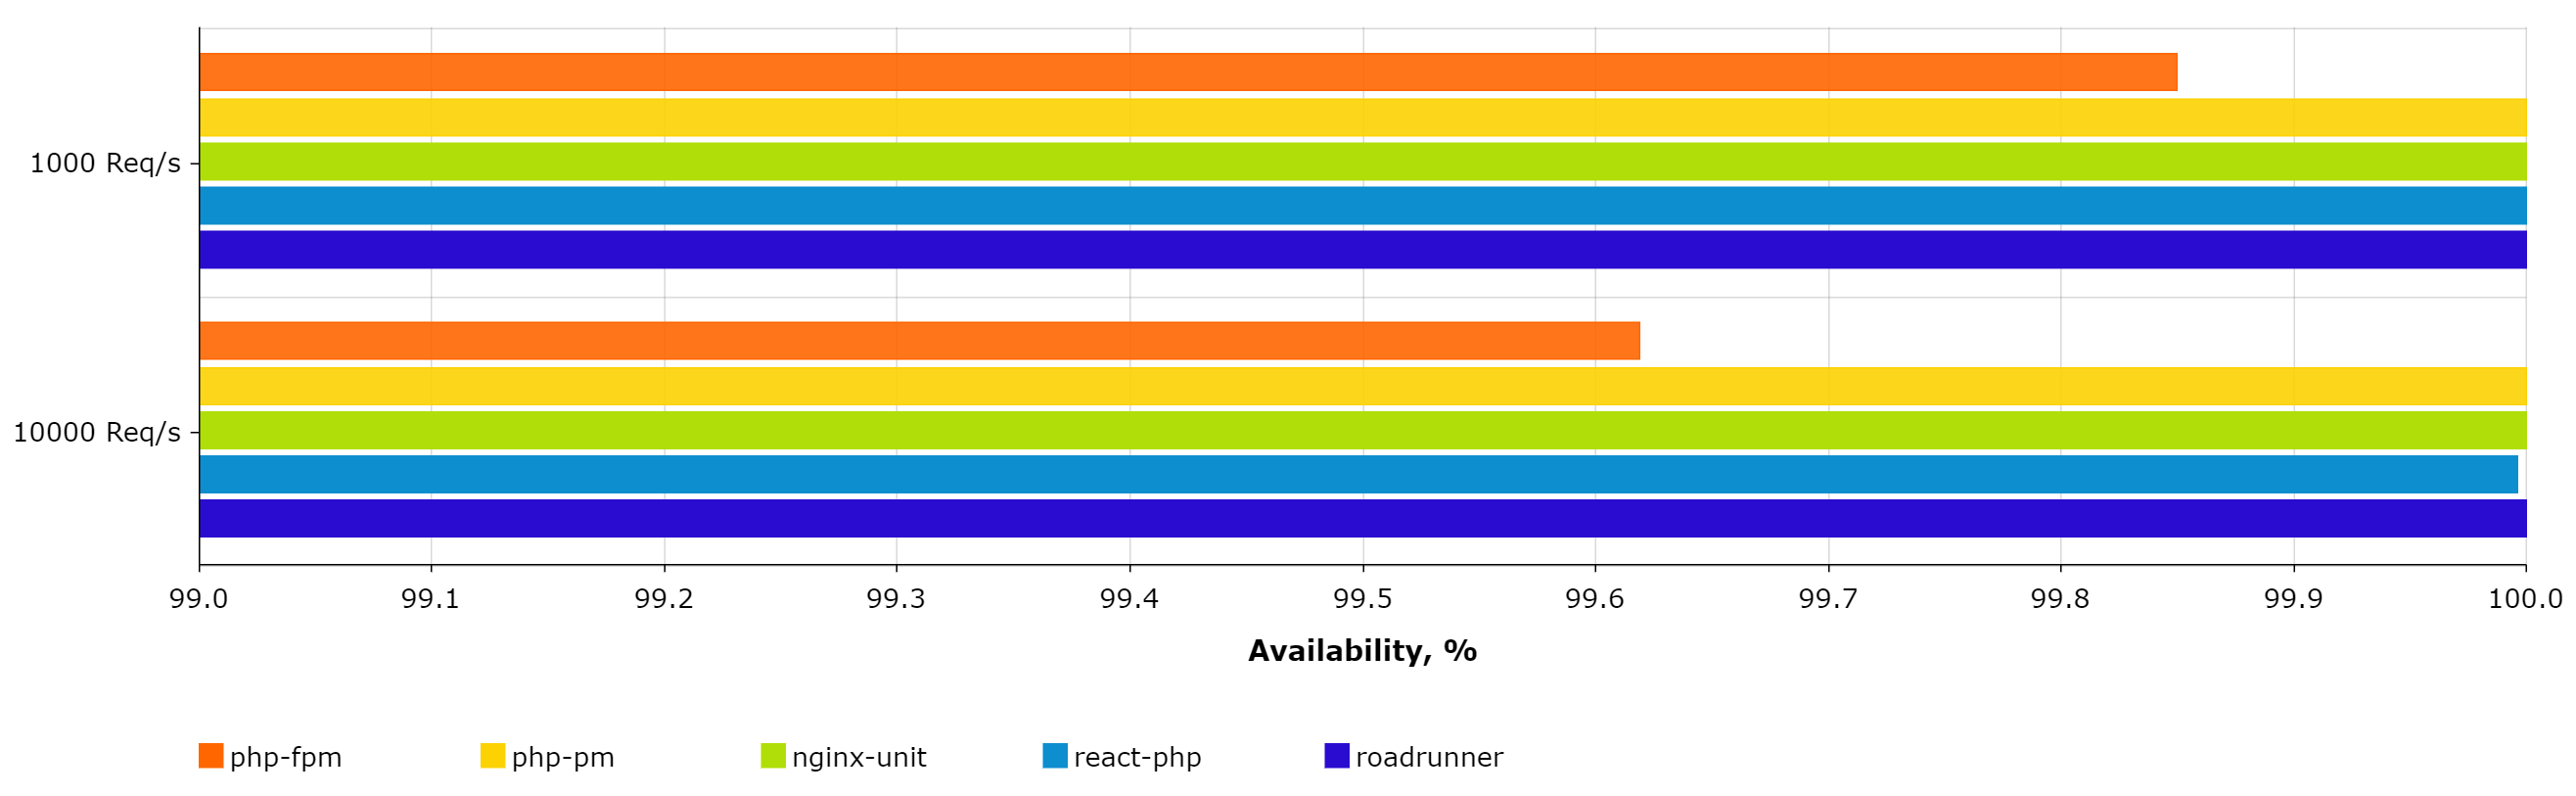 RoadRunner availability benchmark